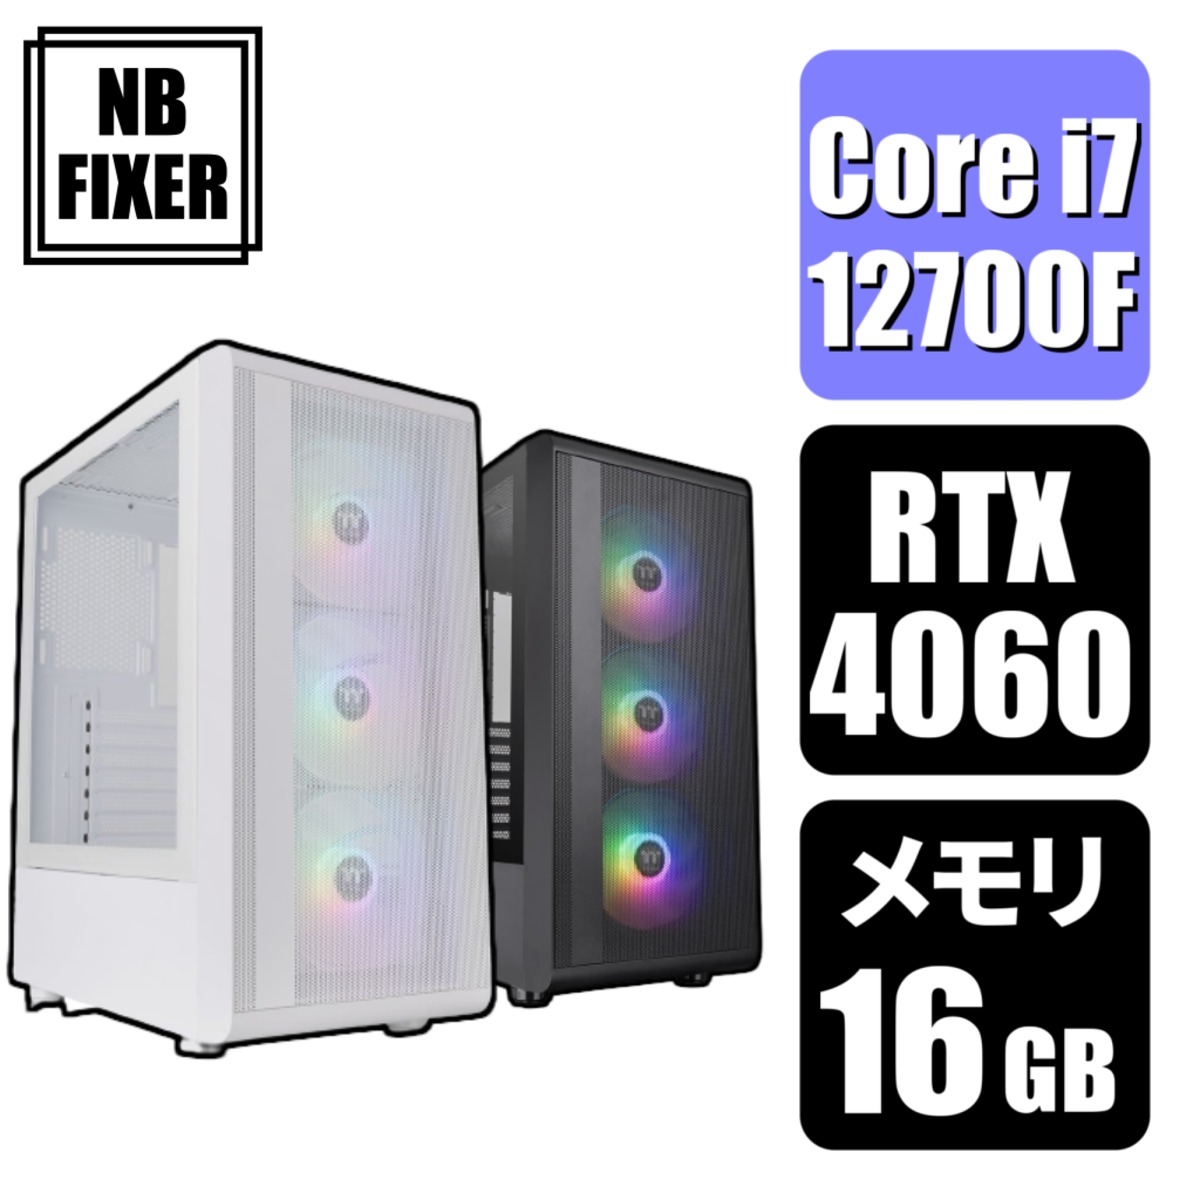 【ゲーミングPC】 Core i7 12700F / RTX4060 / メモリ16GB / SSD 1TB | NB FIXER  公式オンラインショップ powered by BASE